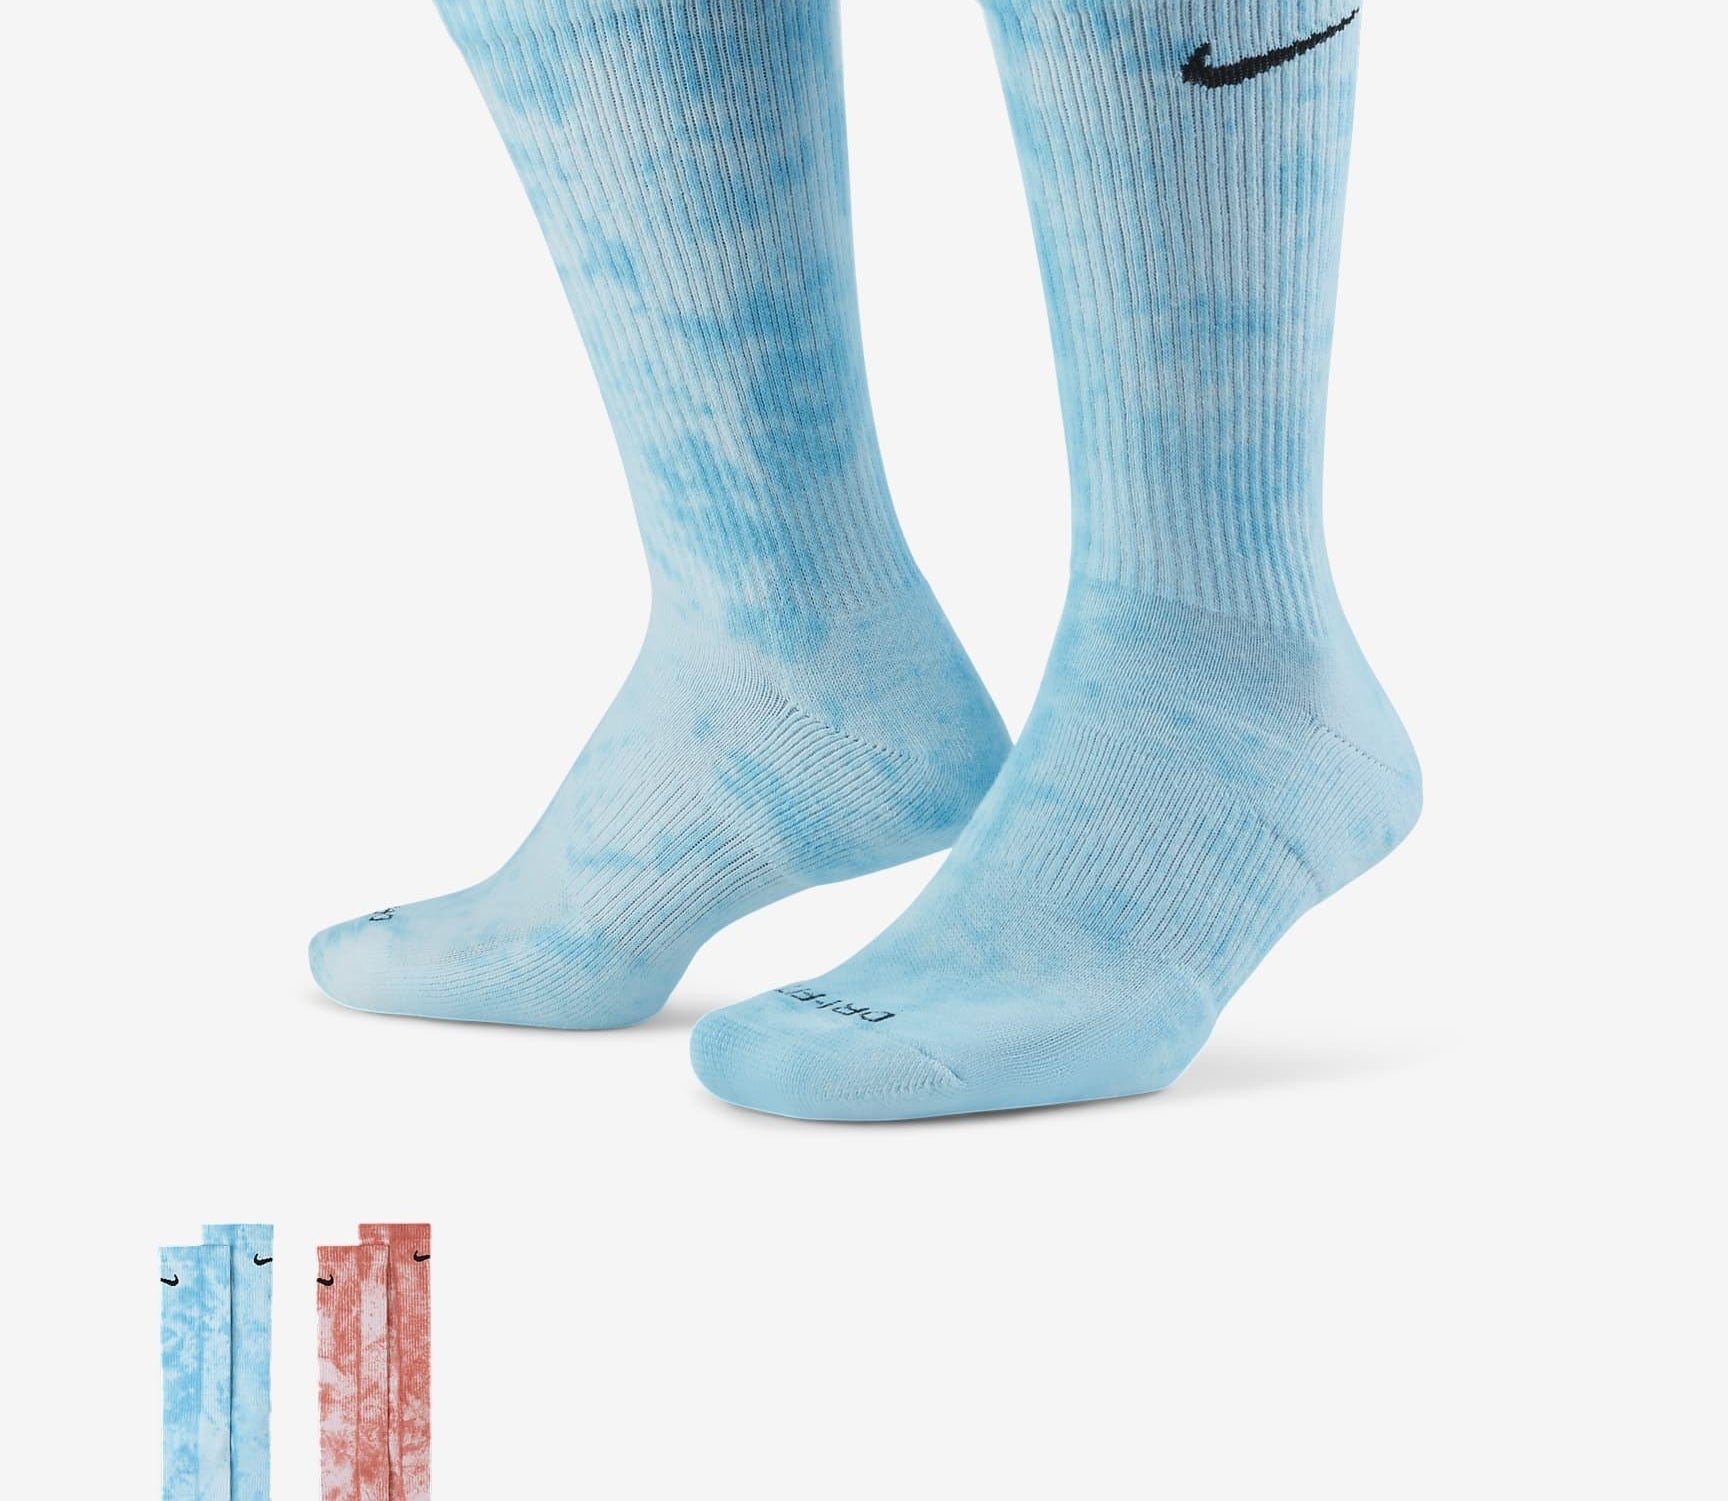 A pair of blue tie dye socks